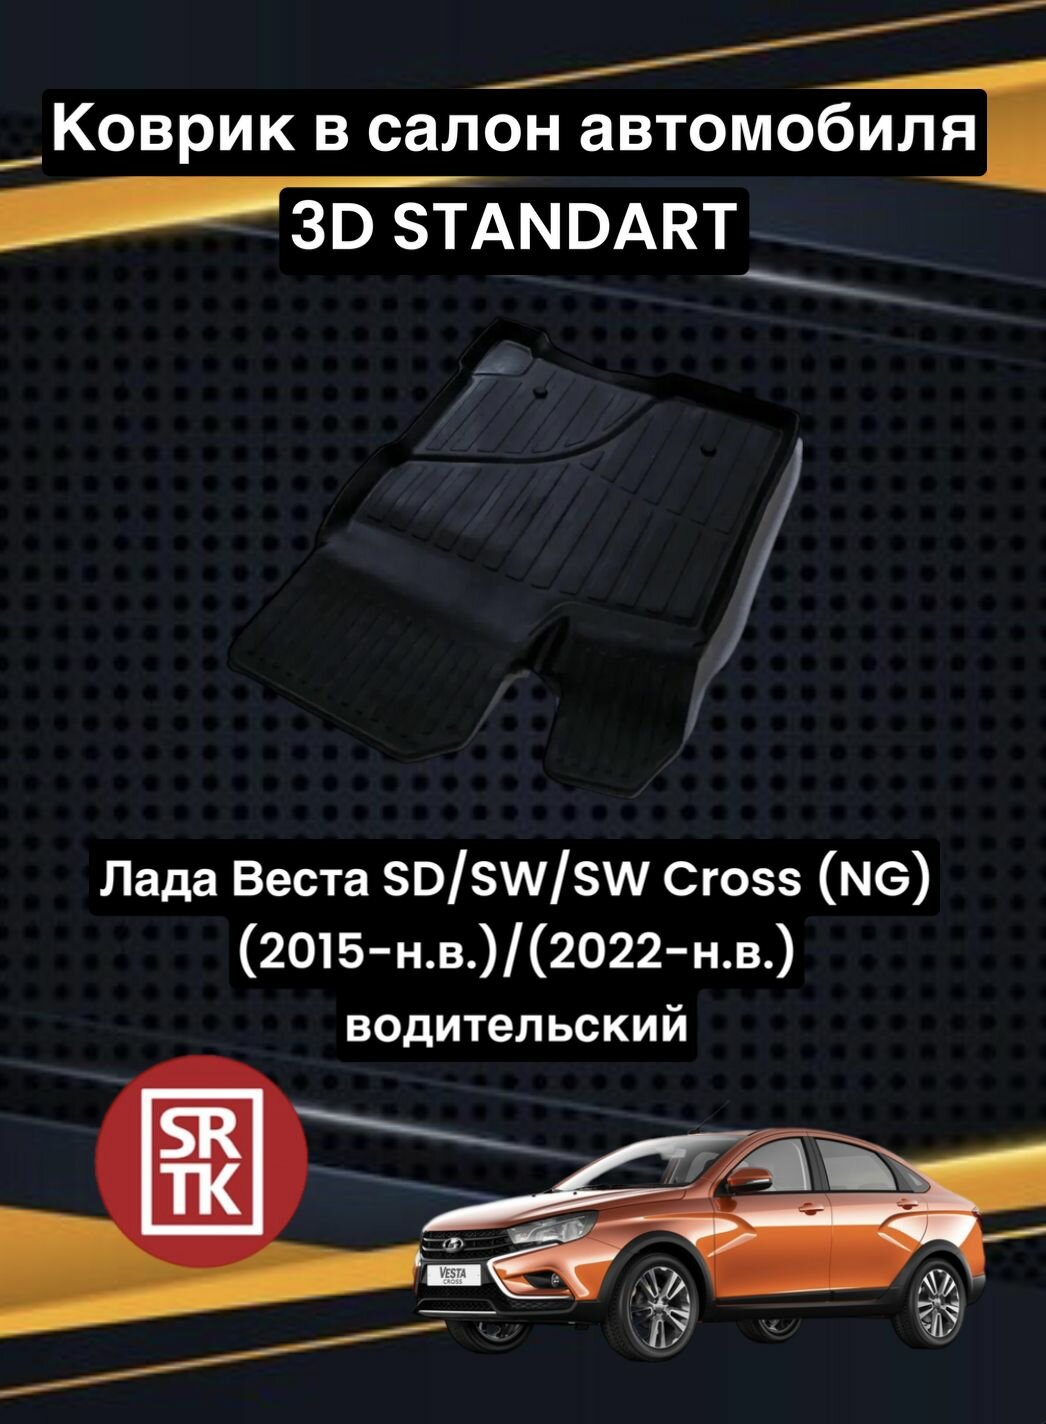 Коврик резиновый Лада Веста/Кросс/Lada Vesta SW /SW Cross (NG) (2015-)/(2022-) 3D Standart SRTK (Саранск) водительский в салон